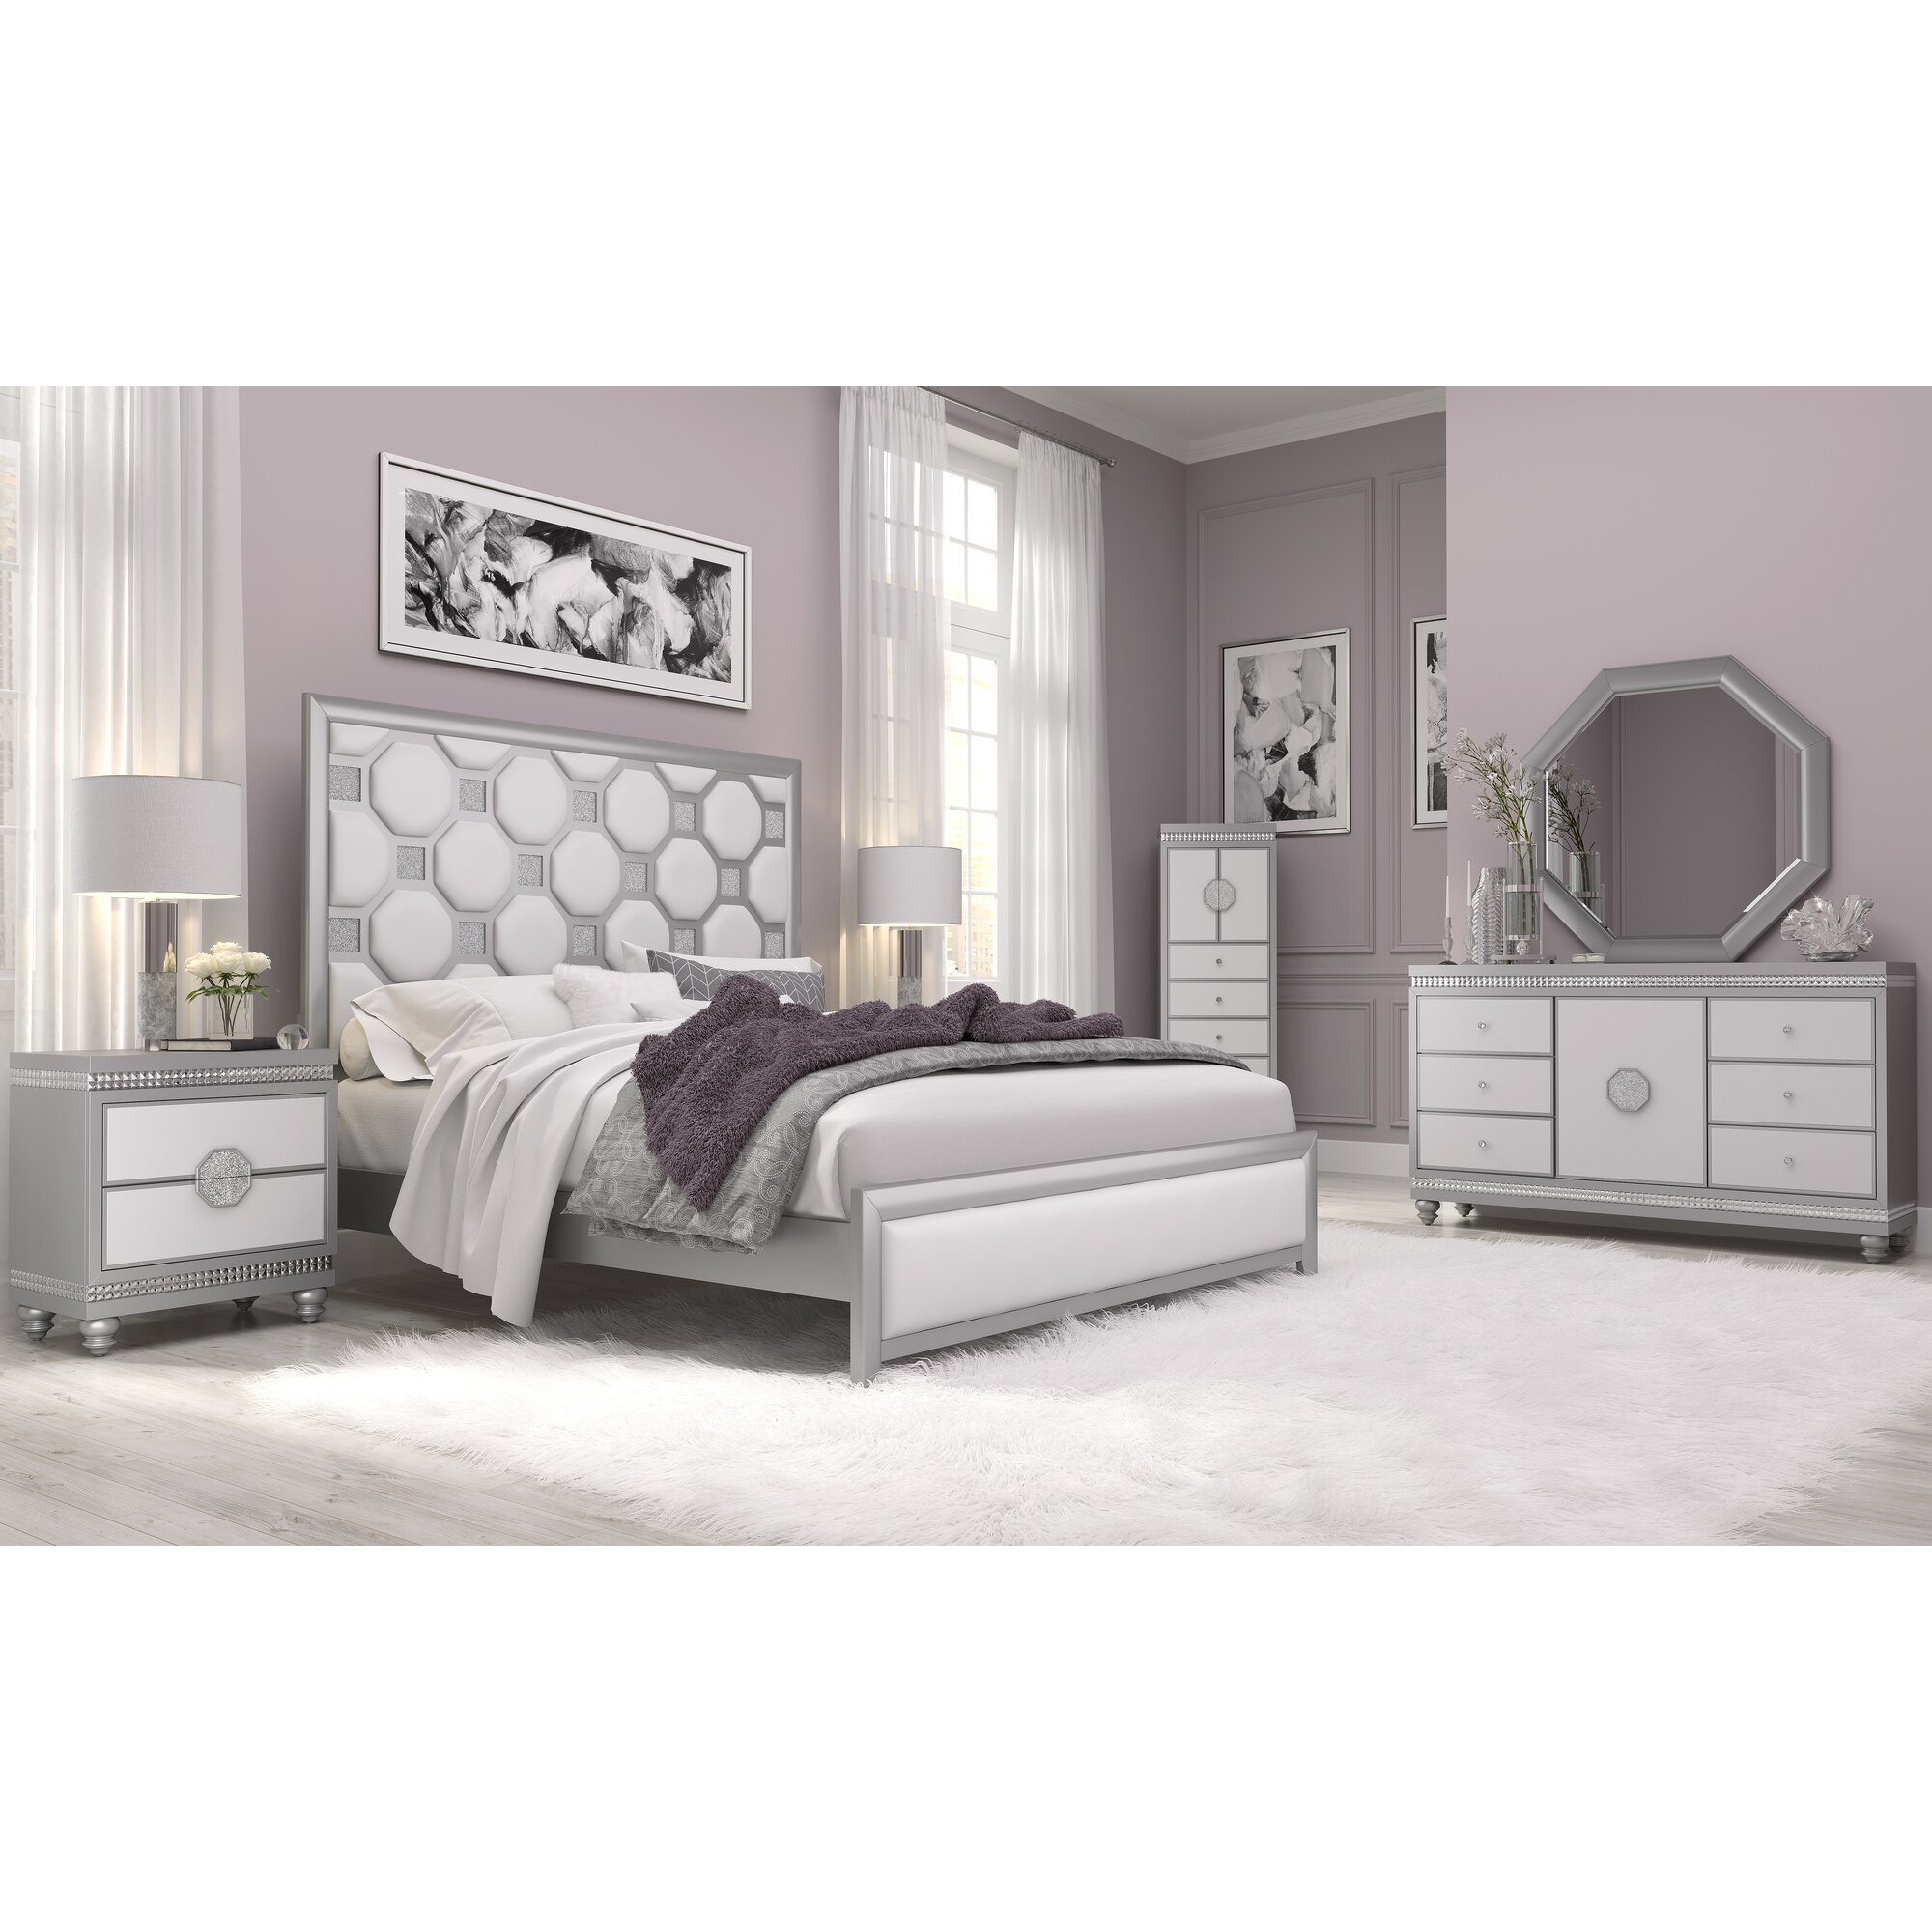 Vogelsang Queen Standard Configurable Bedroom Set